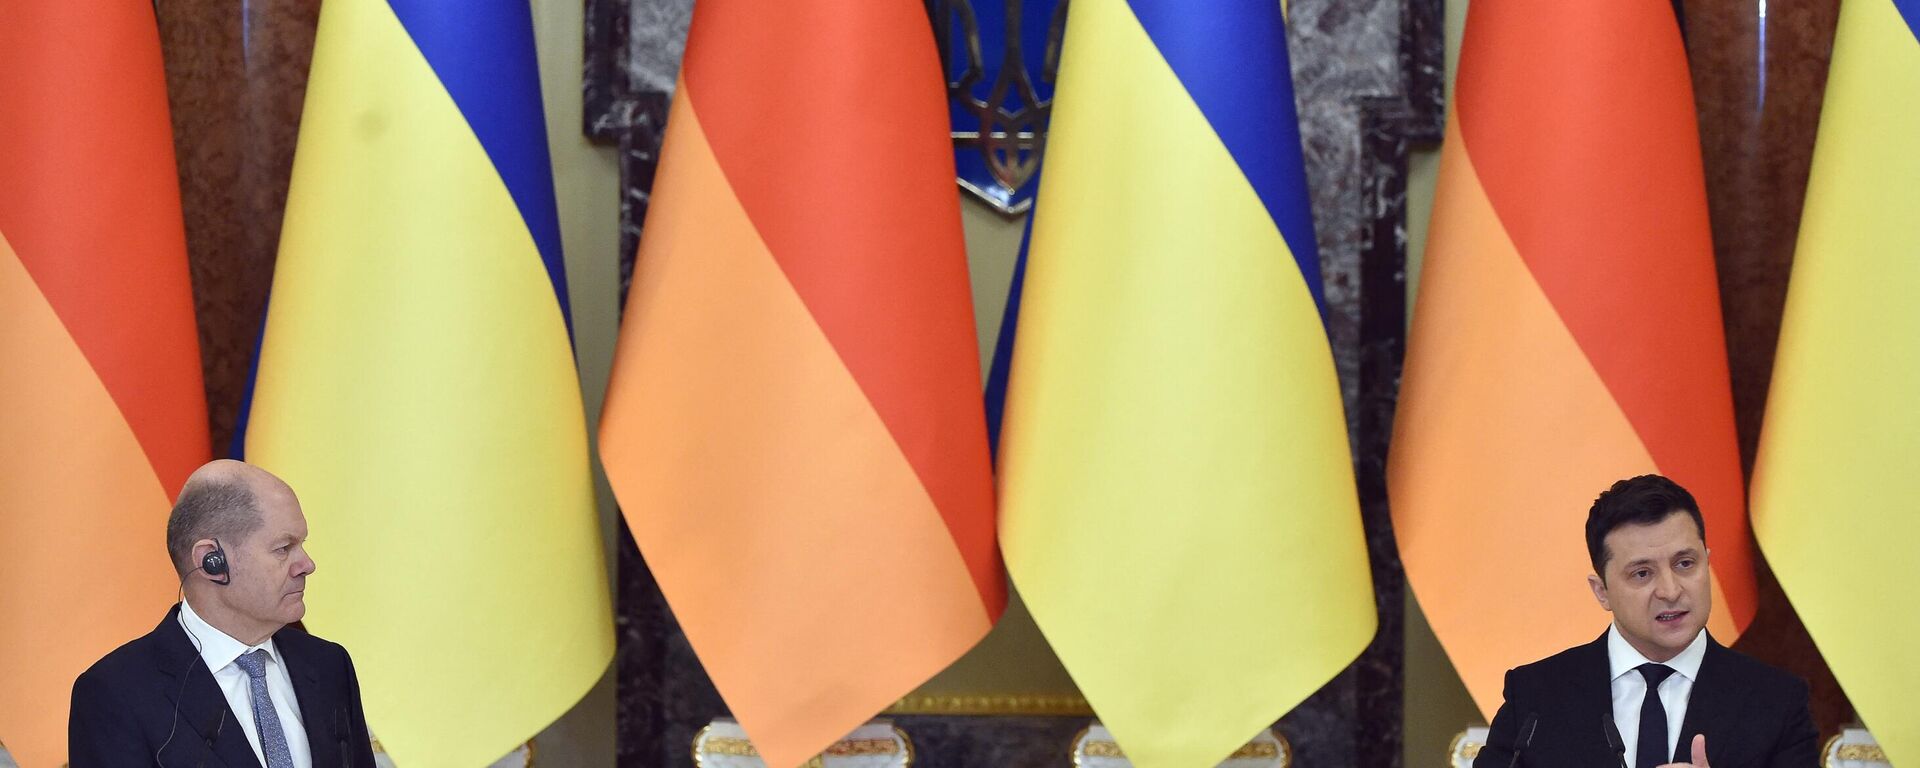 Vladimir Zelensky, presidente ucraniano, e Olaf Scholz, chanceler da Alemanha, participam de entrevista coletiva em Kiev, Ucrânia, 14 de fevereiro de 2022 - Sputnik Brasil, 1920, 14.02.2022